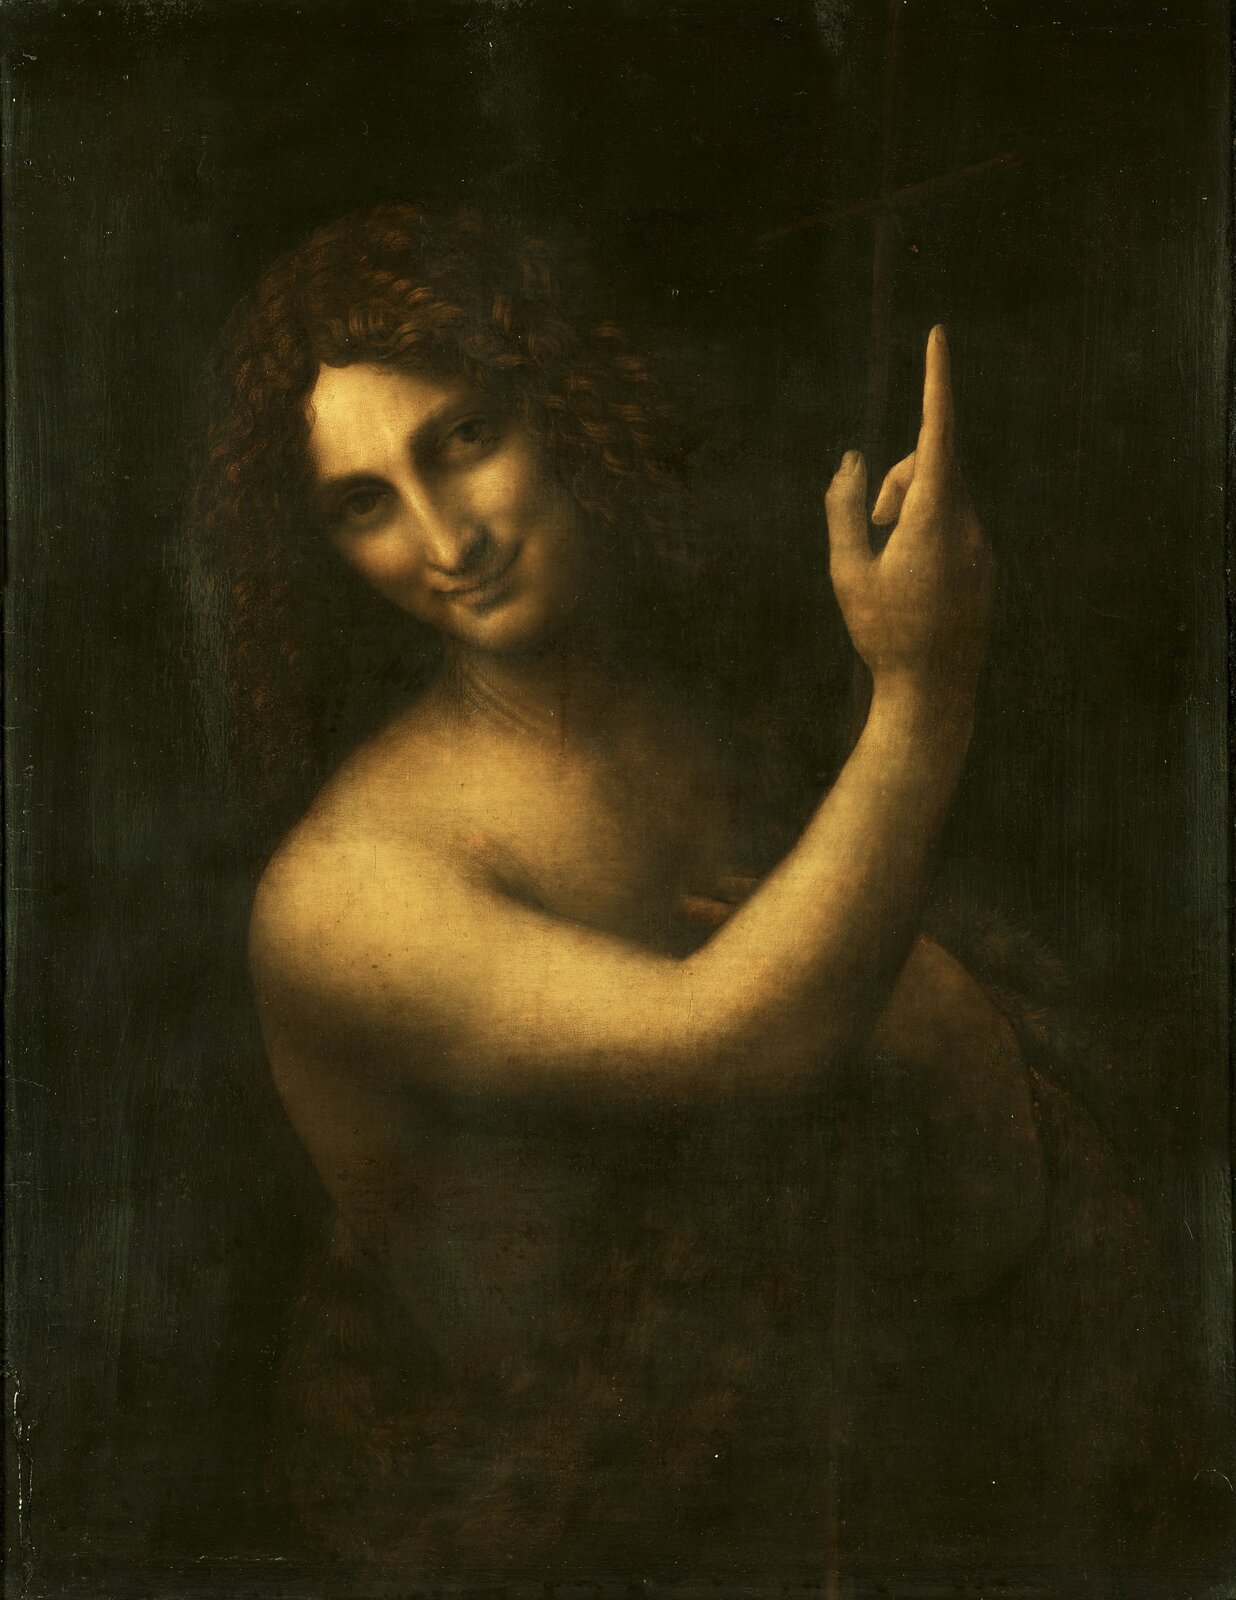 Ilustracja przedstawia obraz Leonarda da Vinci „Jan Chrzciciel”. Ma kształt pionowego prostokąta i ukazuje postać świętego, jako młodzieńca o długich kręconych włosach z lekko przechyloną na prawą stronę głową i zgięta ręką, wzniesioną ku górze i wskazującego palcem ku niebu. Na jego twarzy pojawia się delikatny uśmiech. Postać przedstawiona jest na jednolitym, ciemnym tle. 